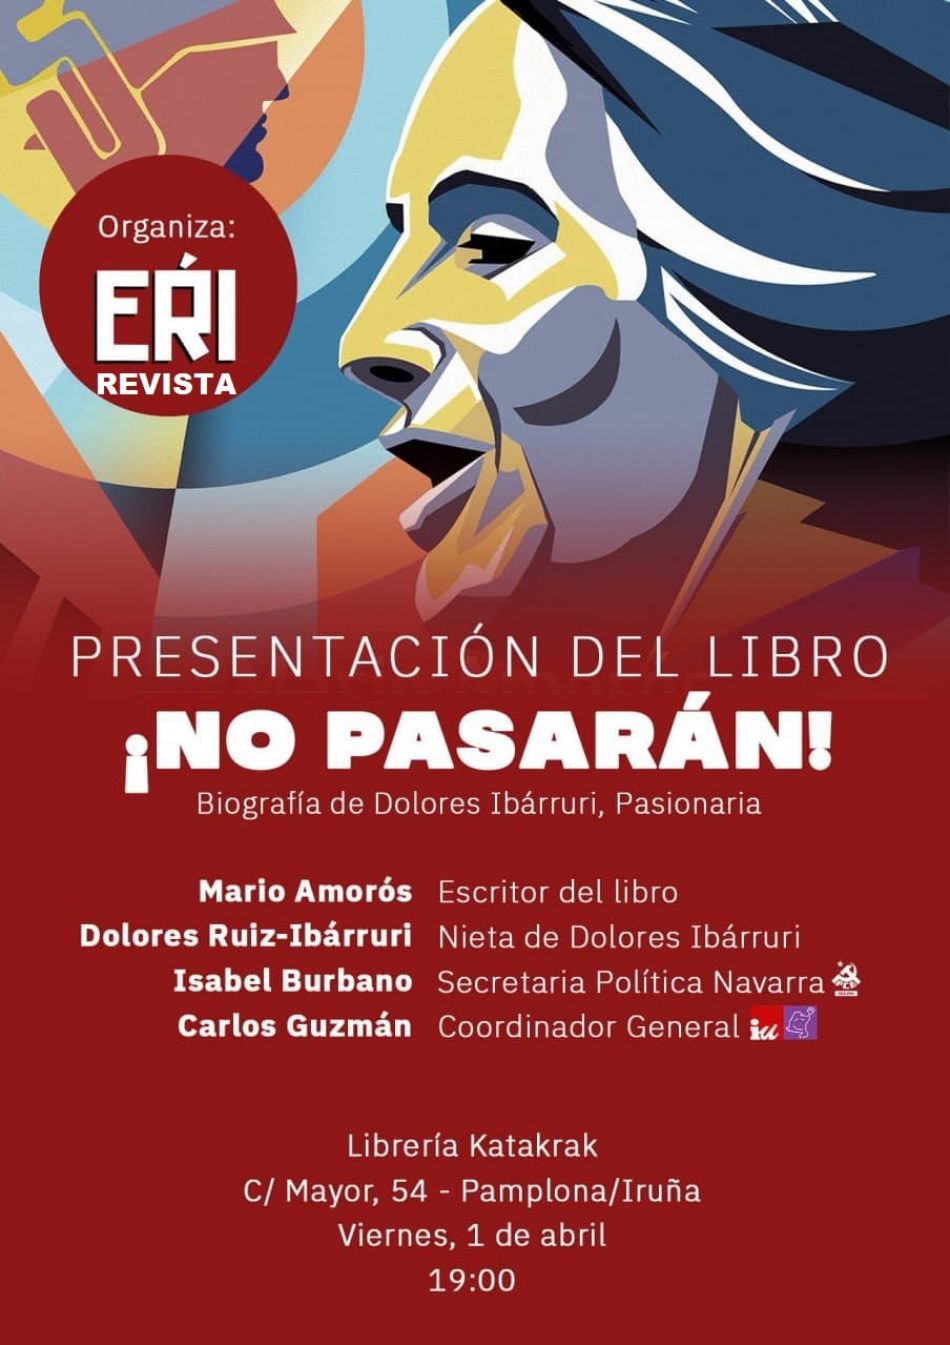 Mario Amorós y Lola Ruiz-Ibárruri presentarán en Pamplona la biografía de la Pasionaria el próximo viernes 1 de abril